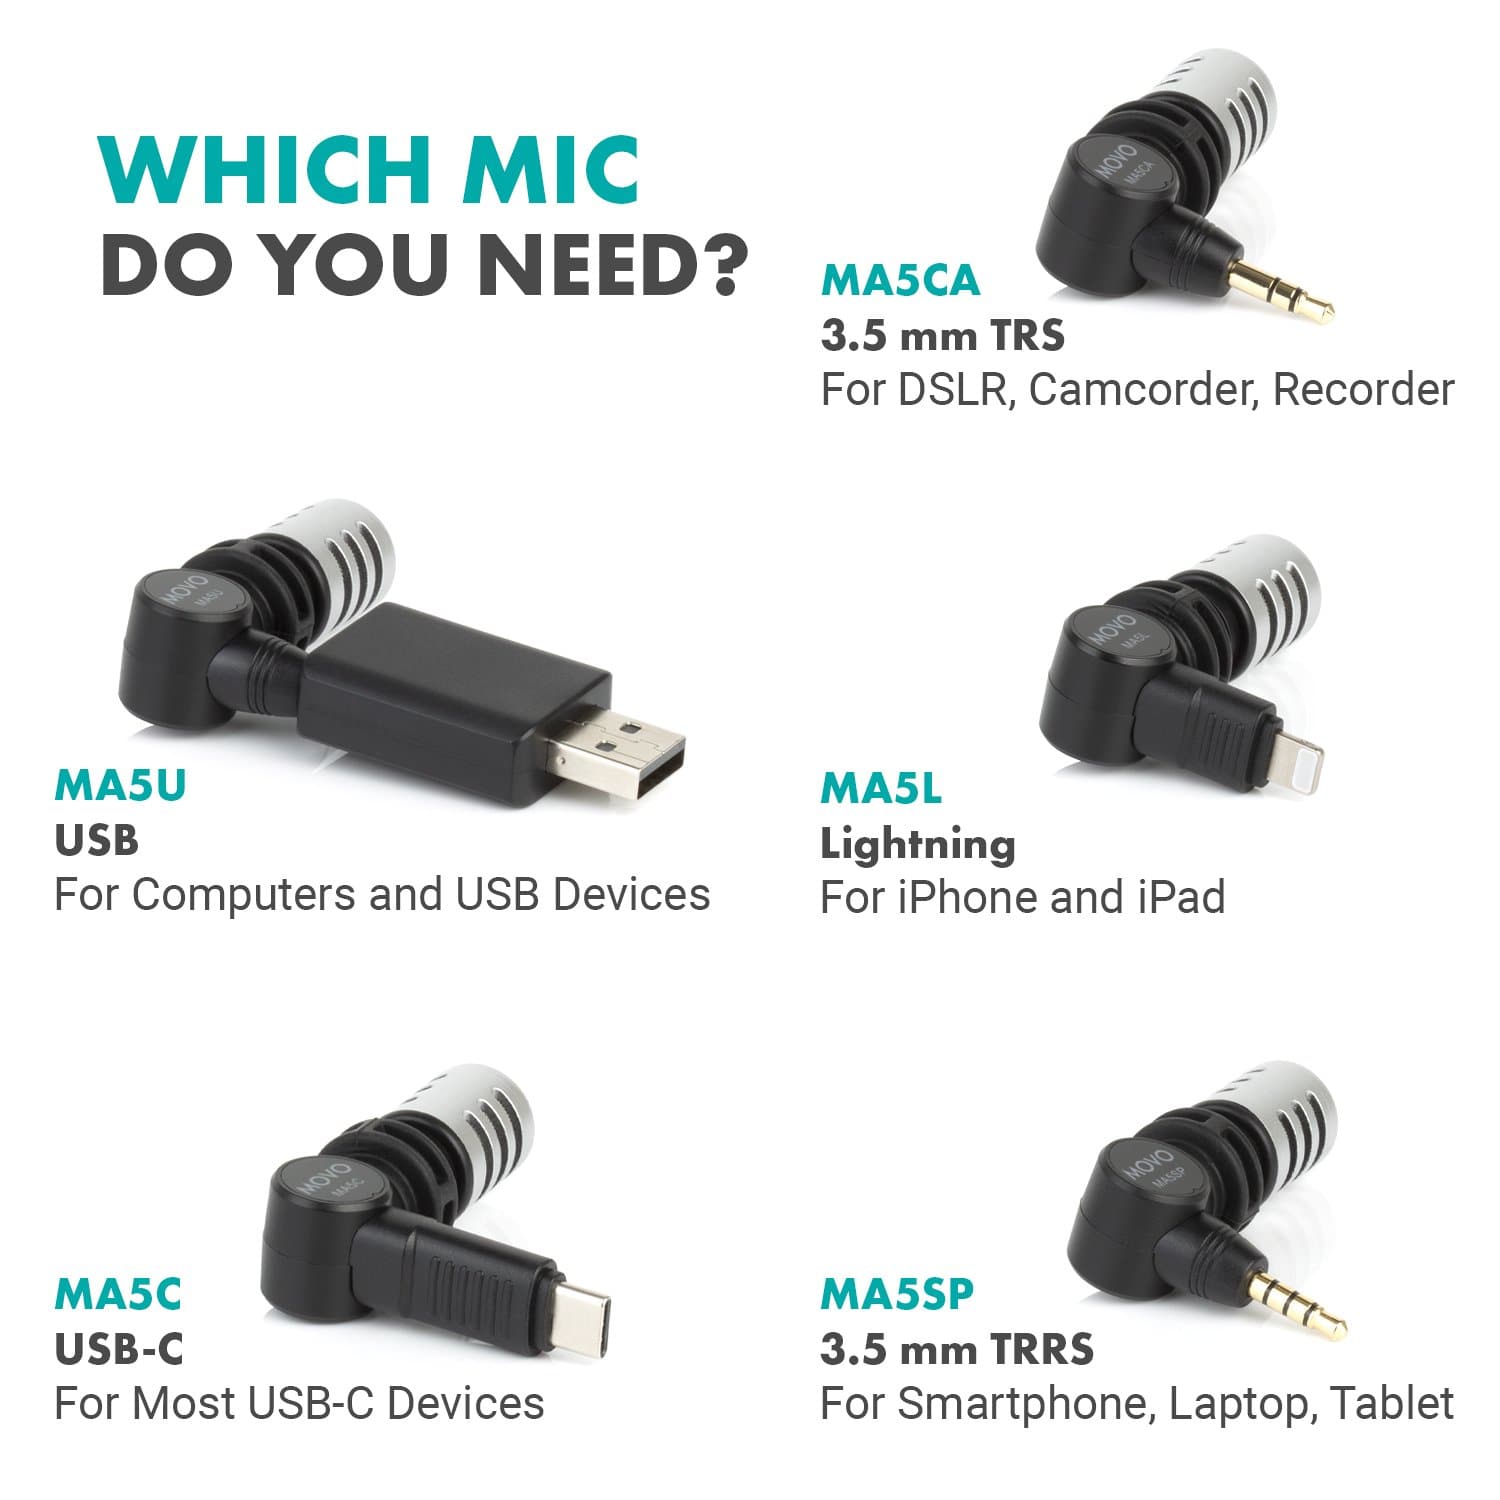 entiteit bezoeker Lastig MA5C | Mini Microphone USB-C Android Smartphones + Tablets | Movo